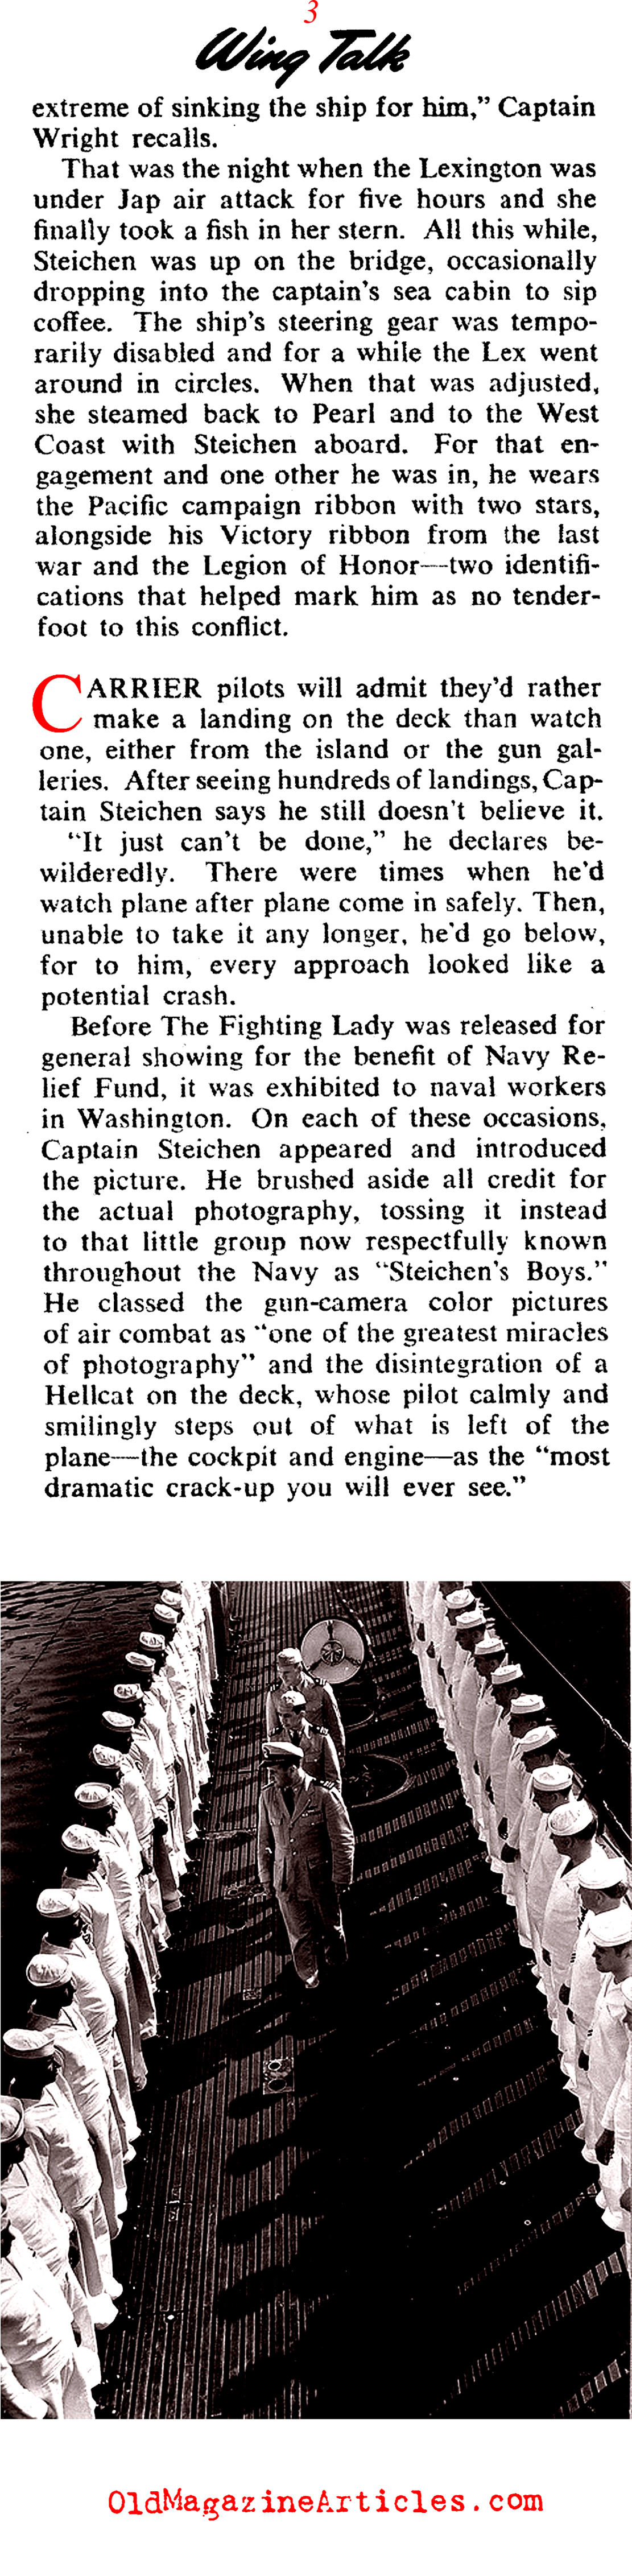 Captain Edward Steichen of the U.S.  Navy (Collier's Magazine, 1945)